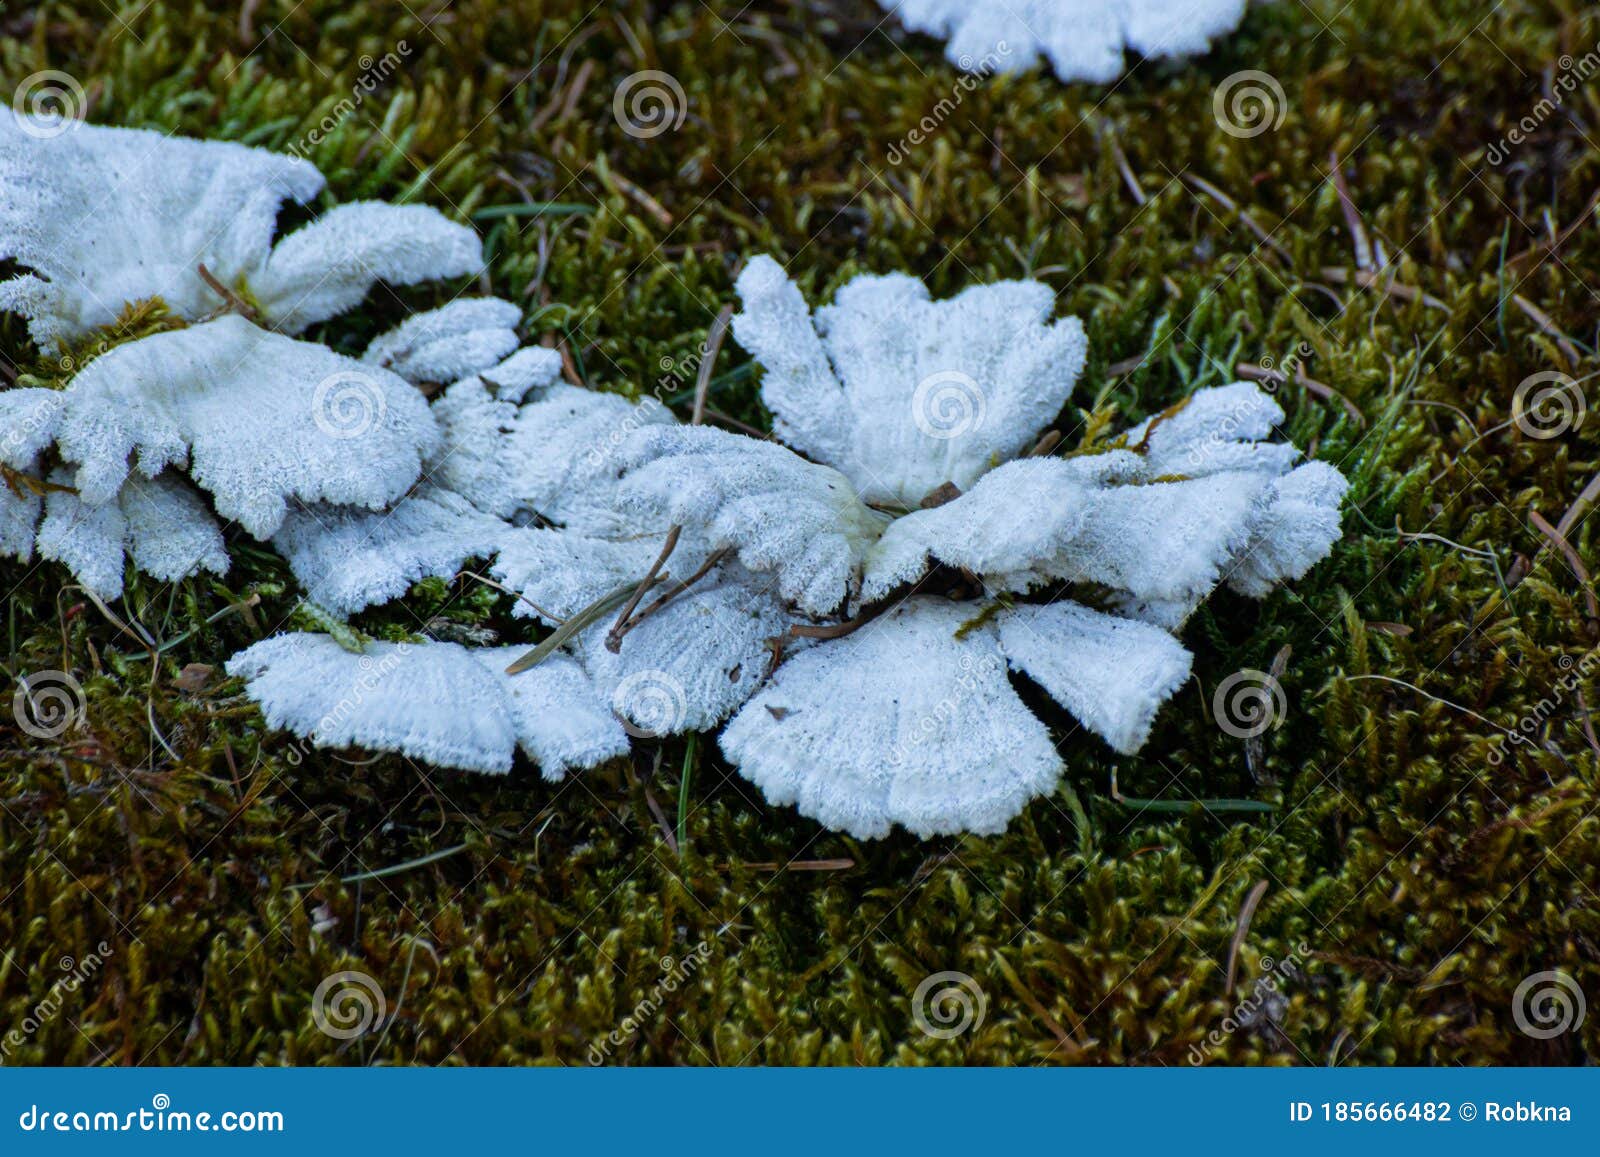 裂褶菌-甘肃太统—崆峒山真菌-图片